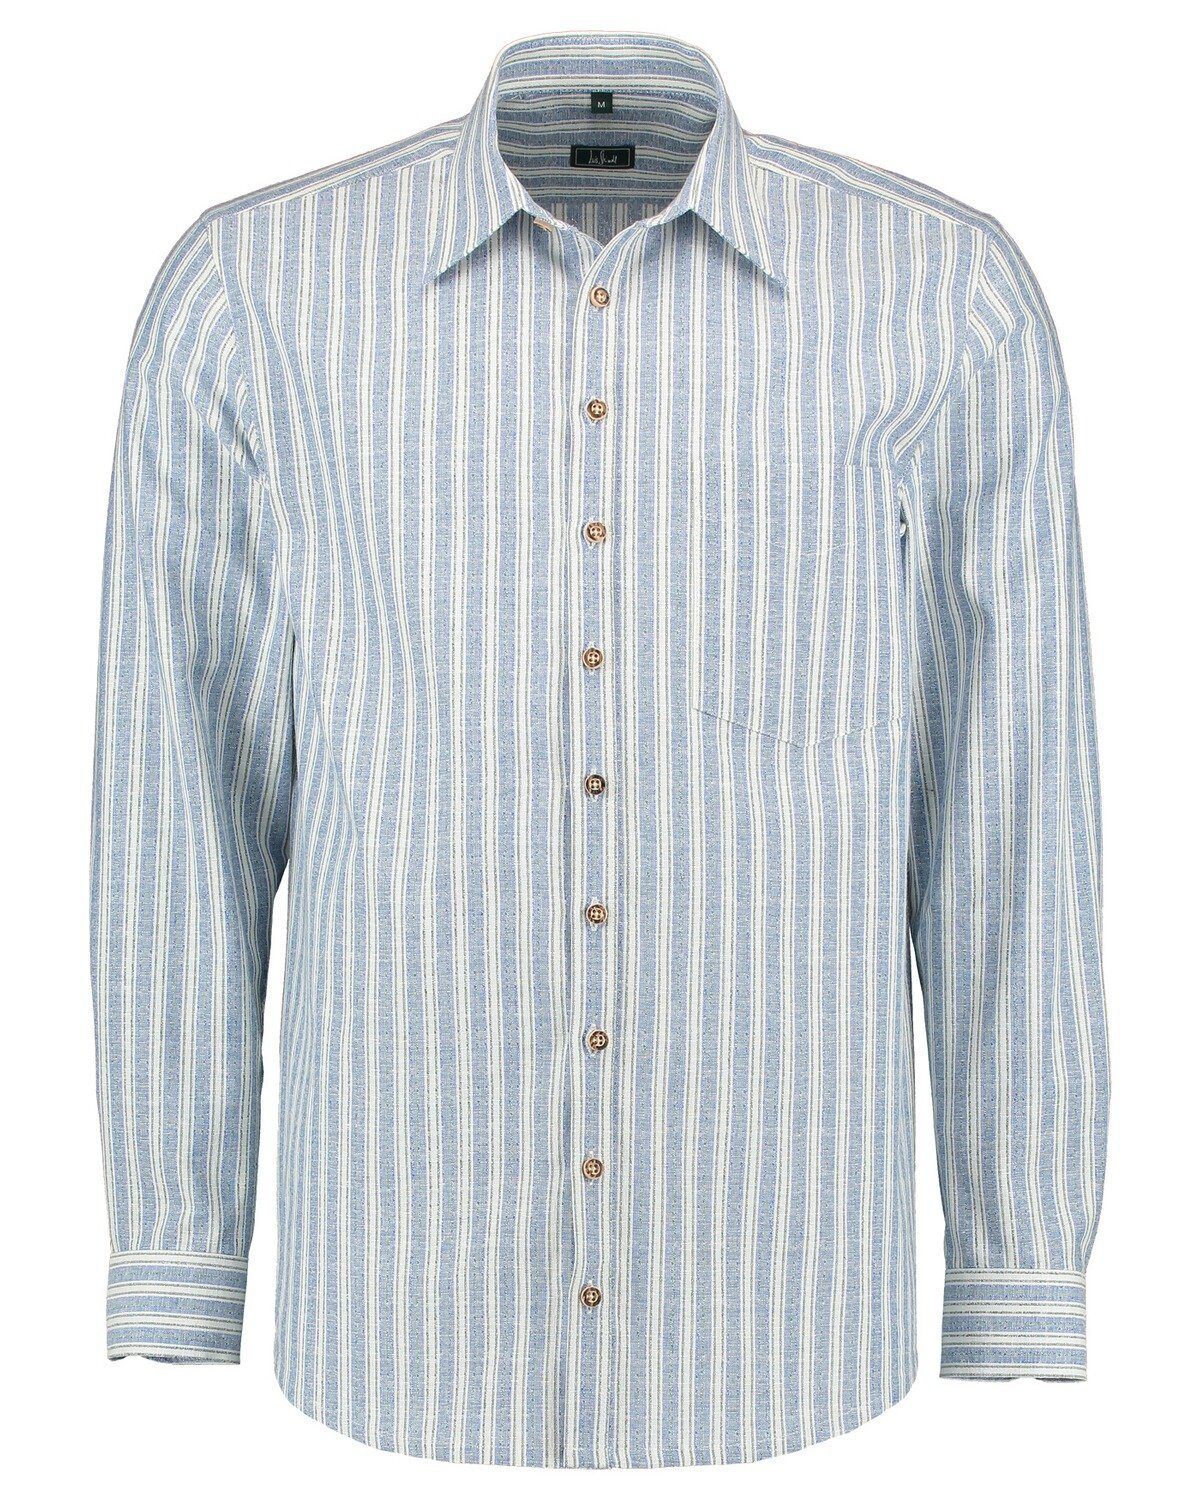 Luis Steindl Trachtenhemd Trachtenhemd Streifen Blau mit